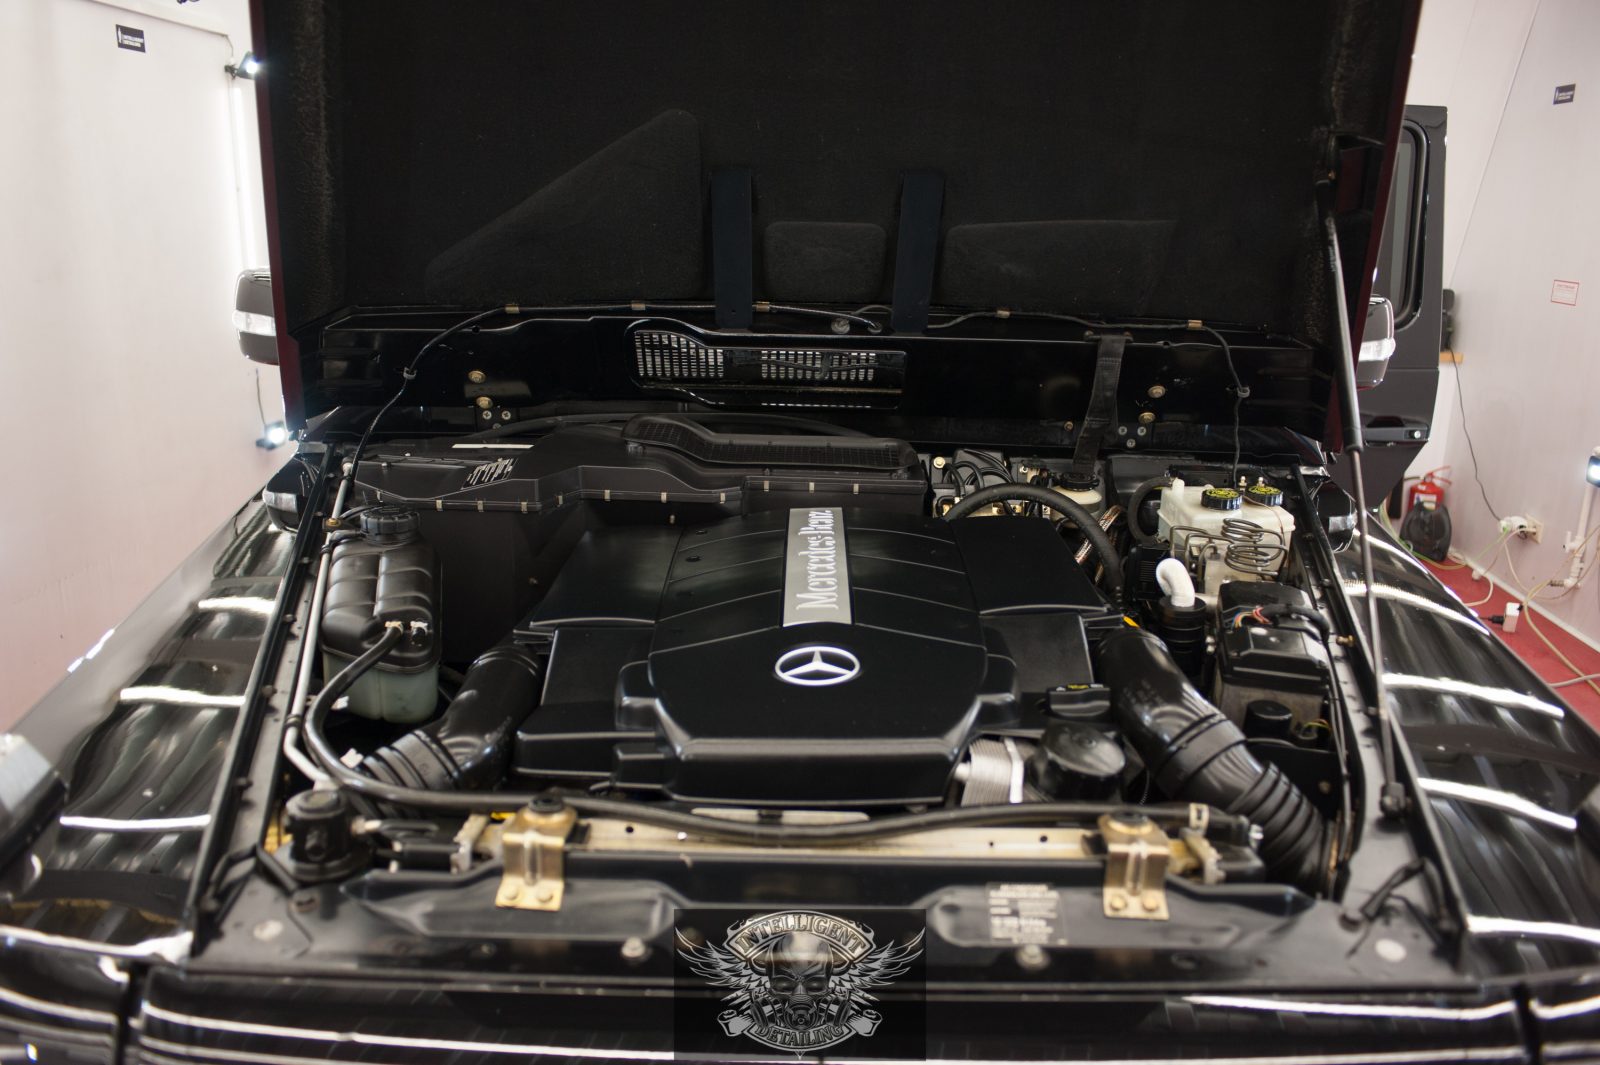 Mercedes g500 бронированный - химчистка салона + полировка ЛКП + твердый воск